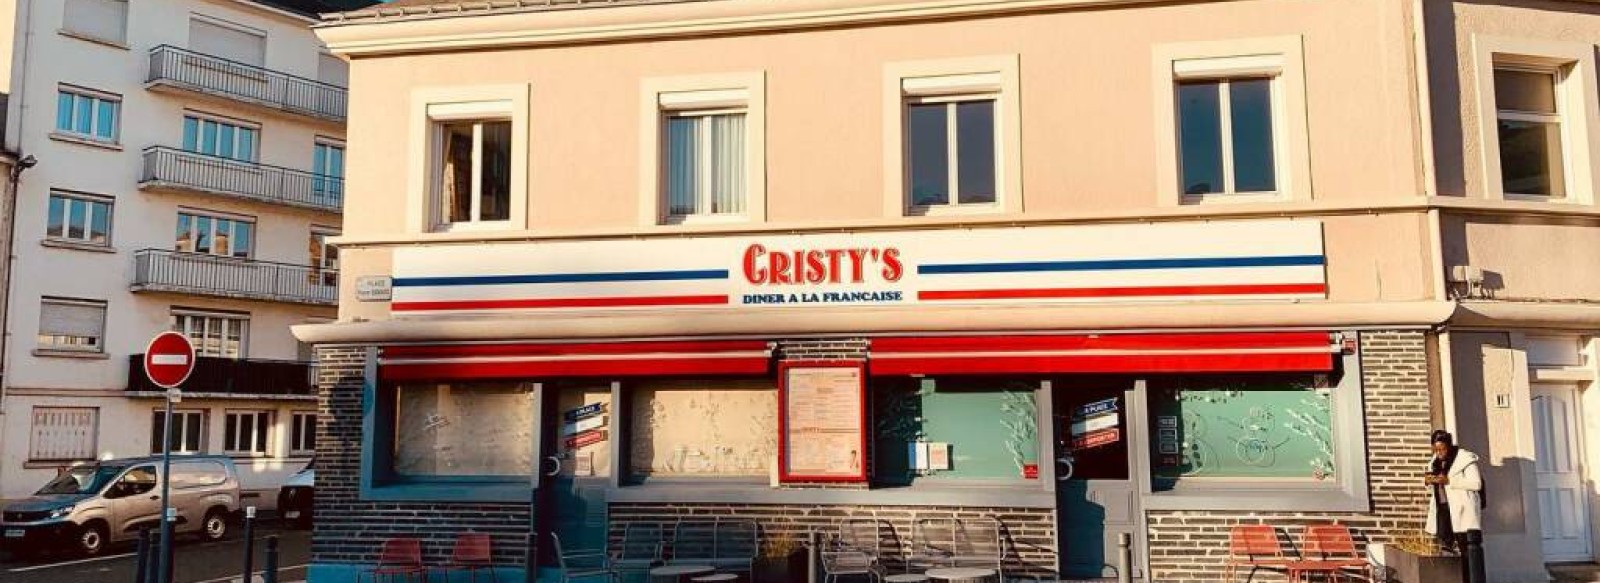 Cristy's Diner a la Francaise